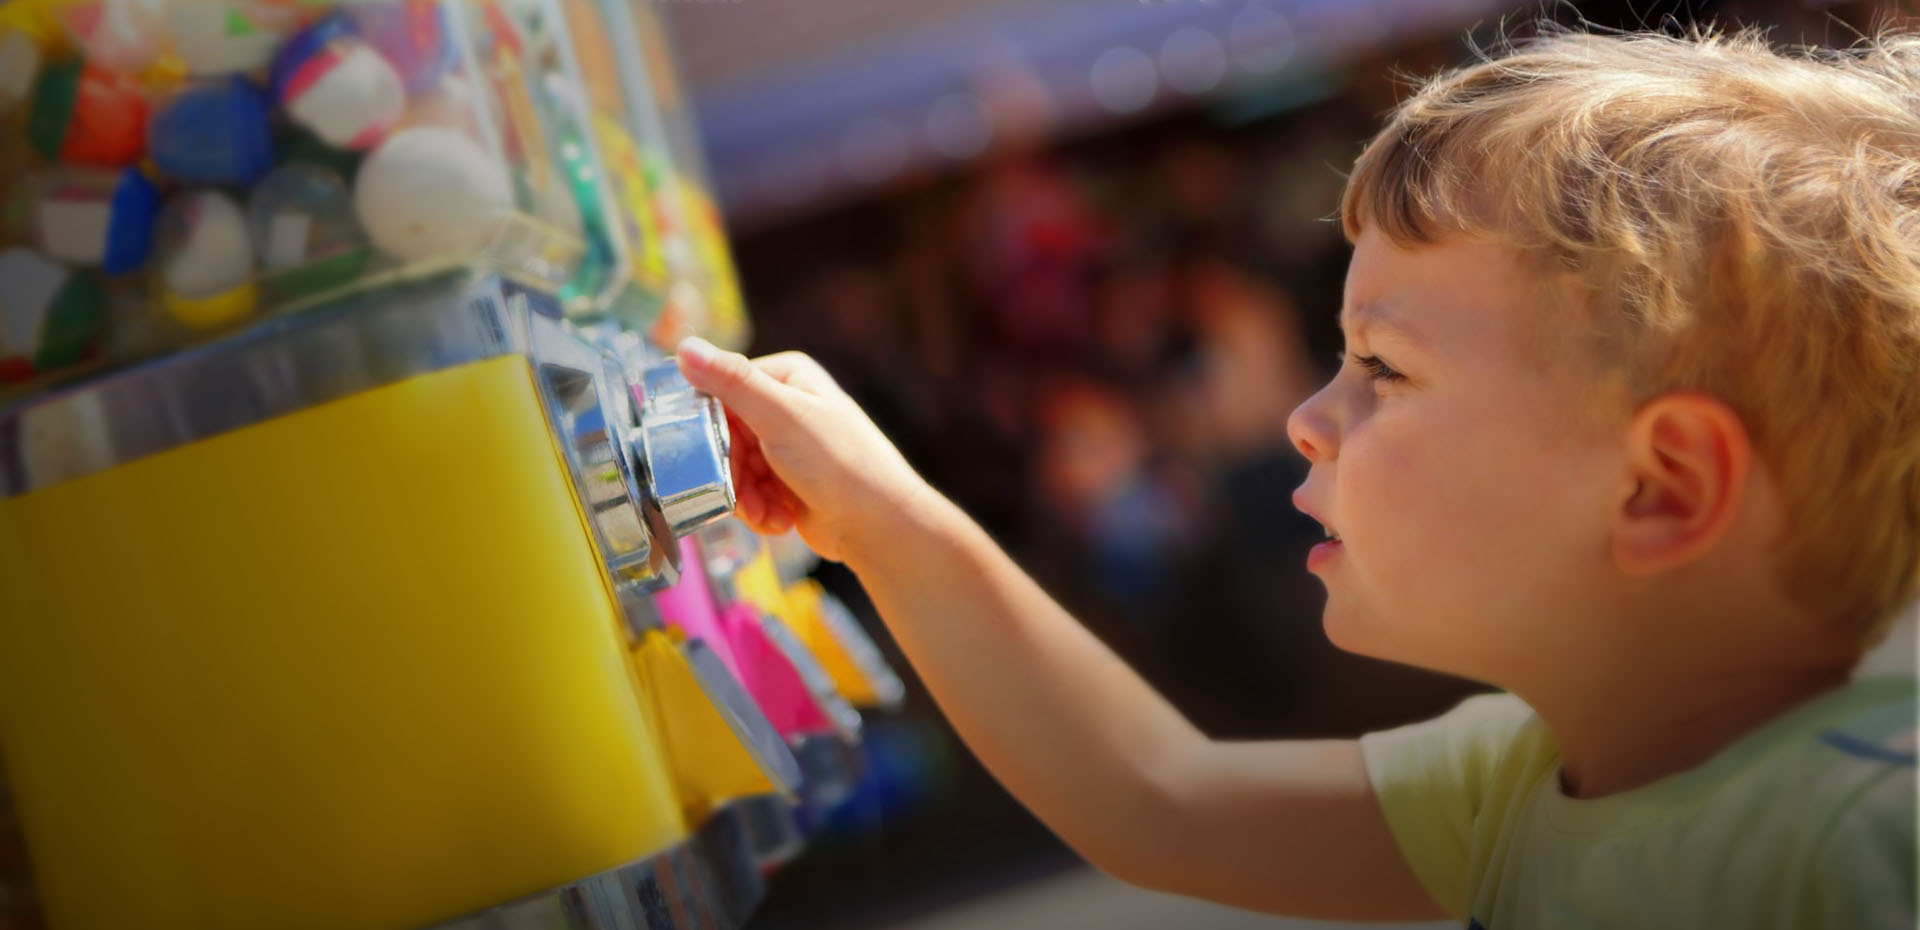 Energy Efficient Toys Vending Machines Loughbrough